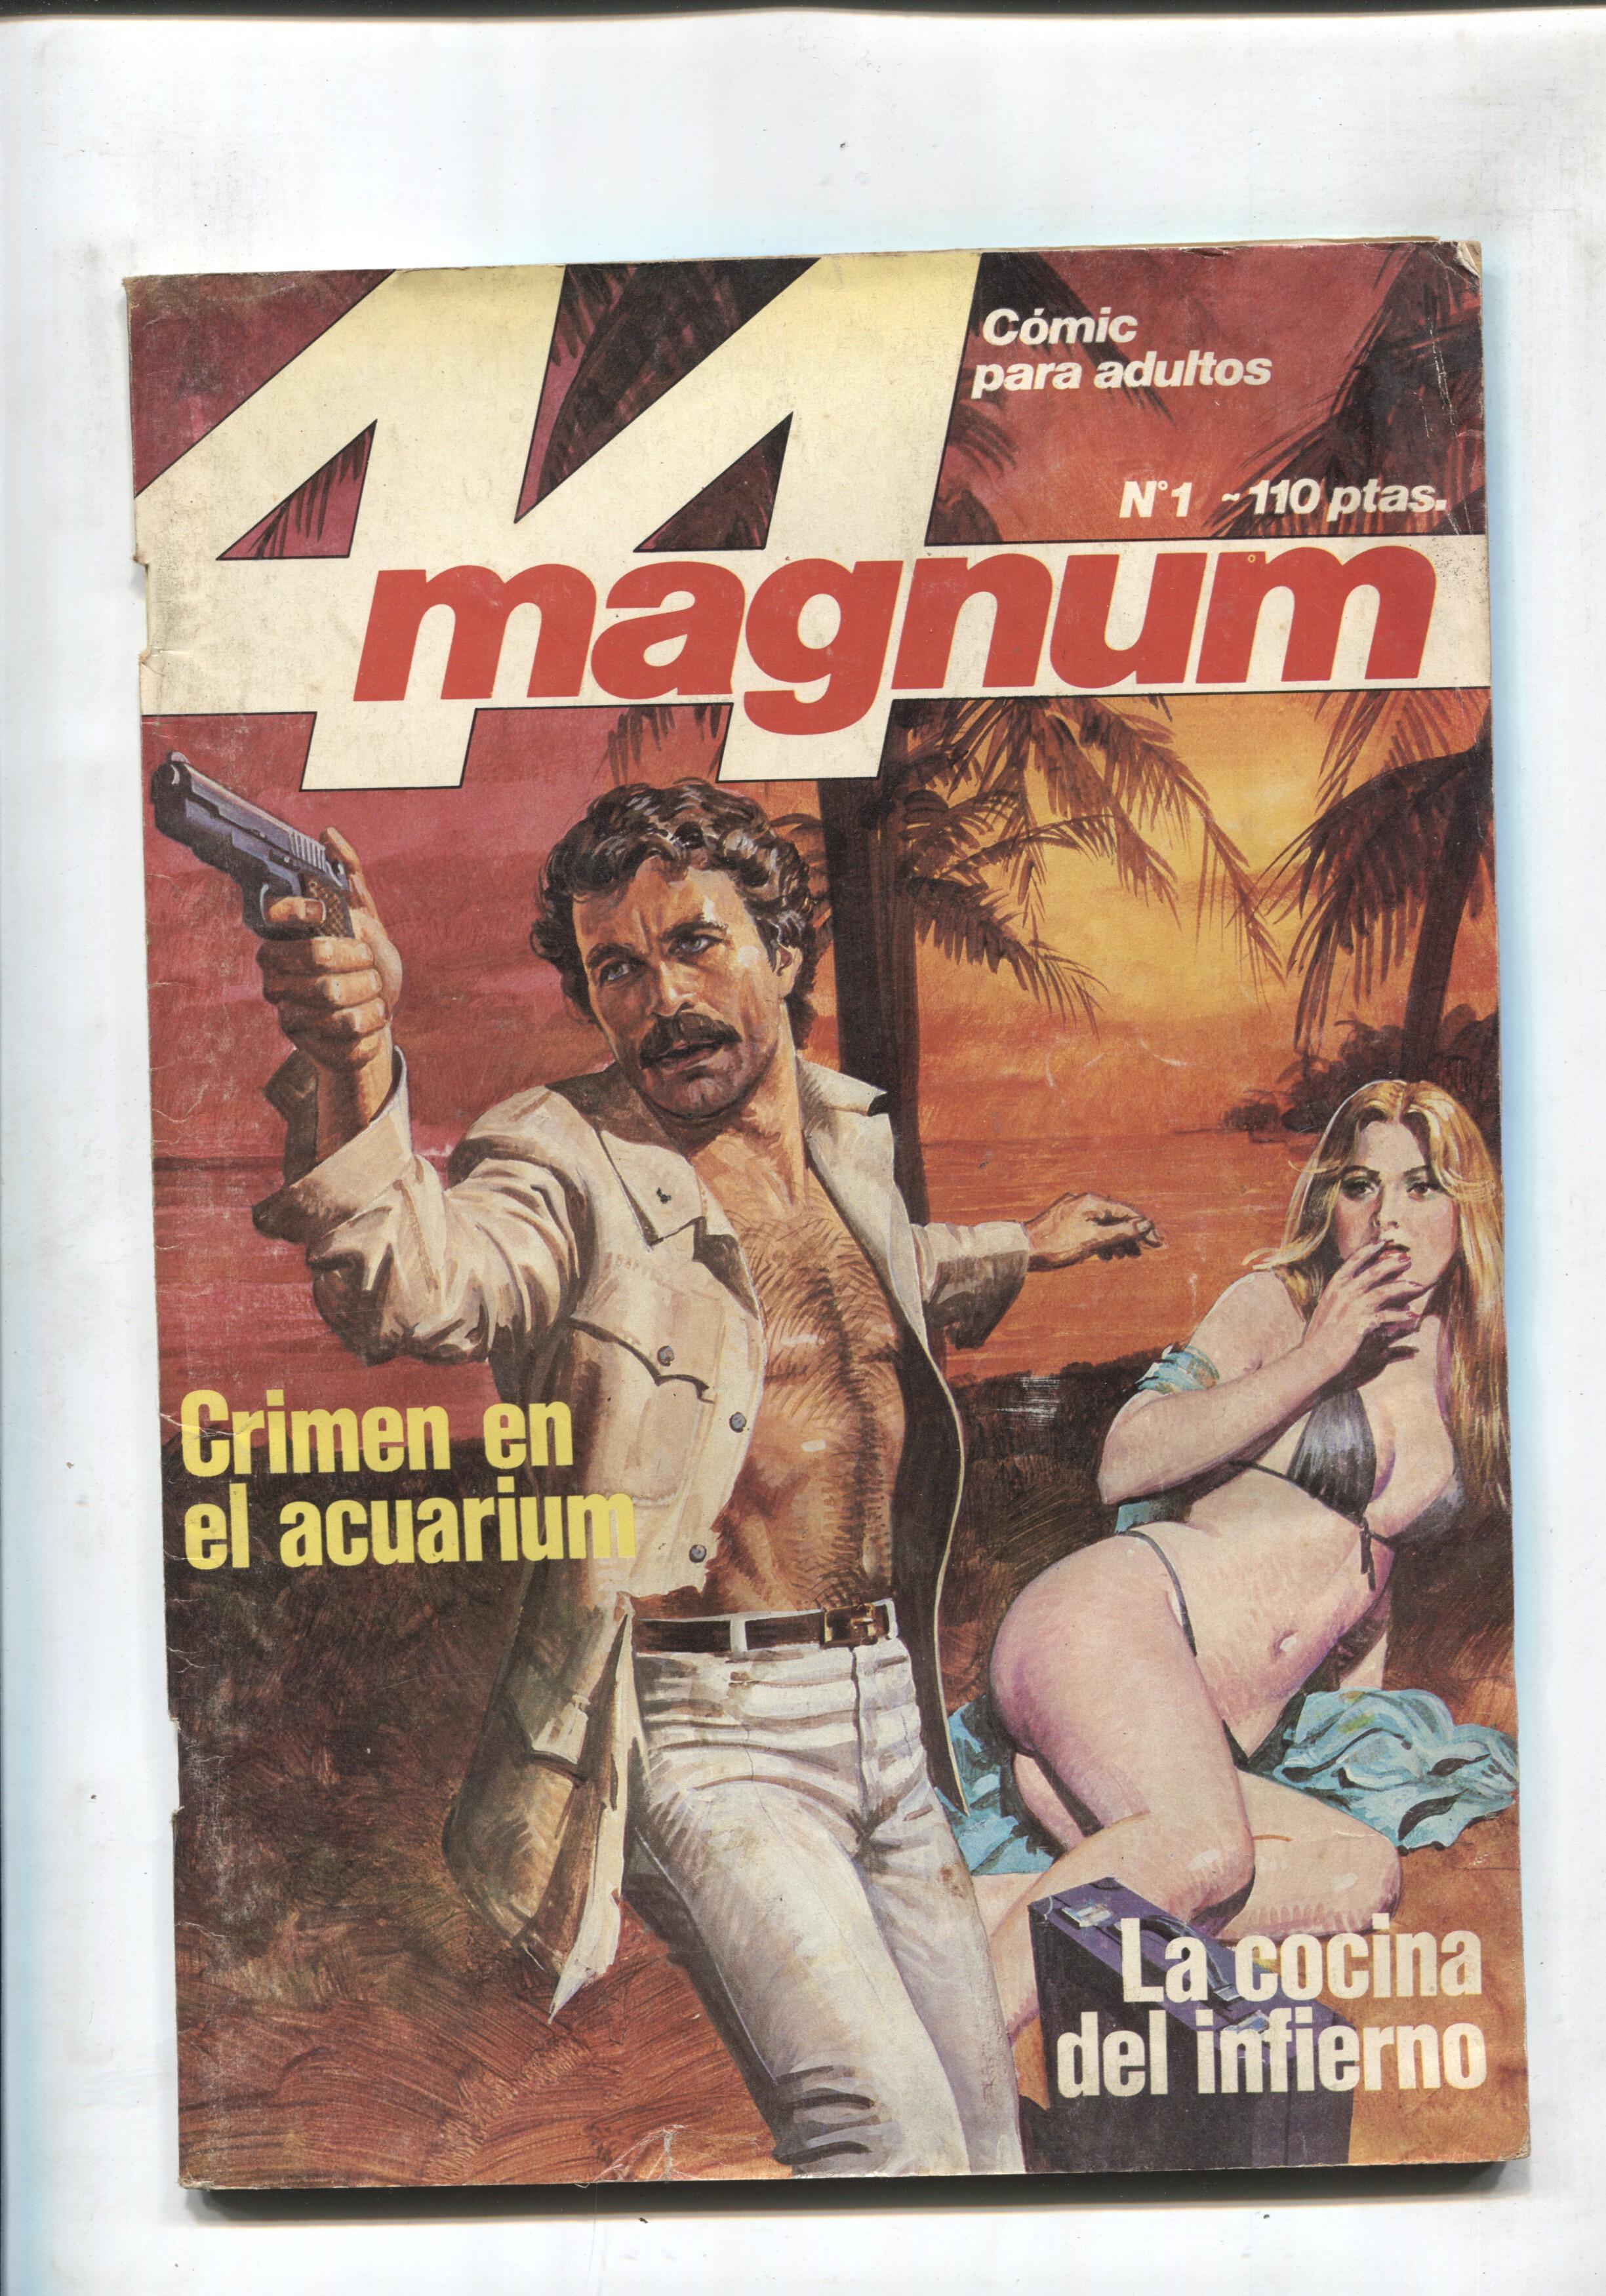 Magnum 44 numero 01 (numerado 1 en trasera)